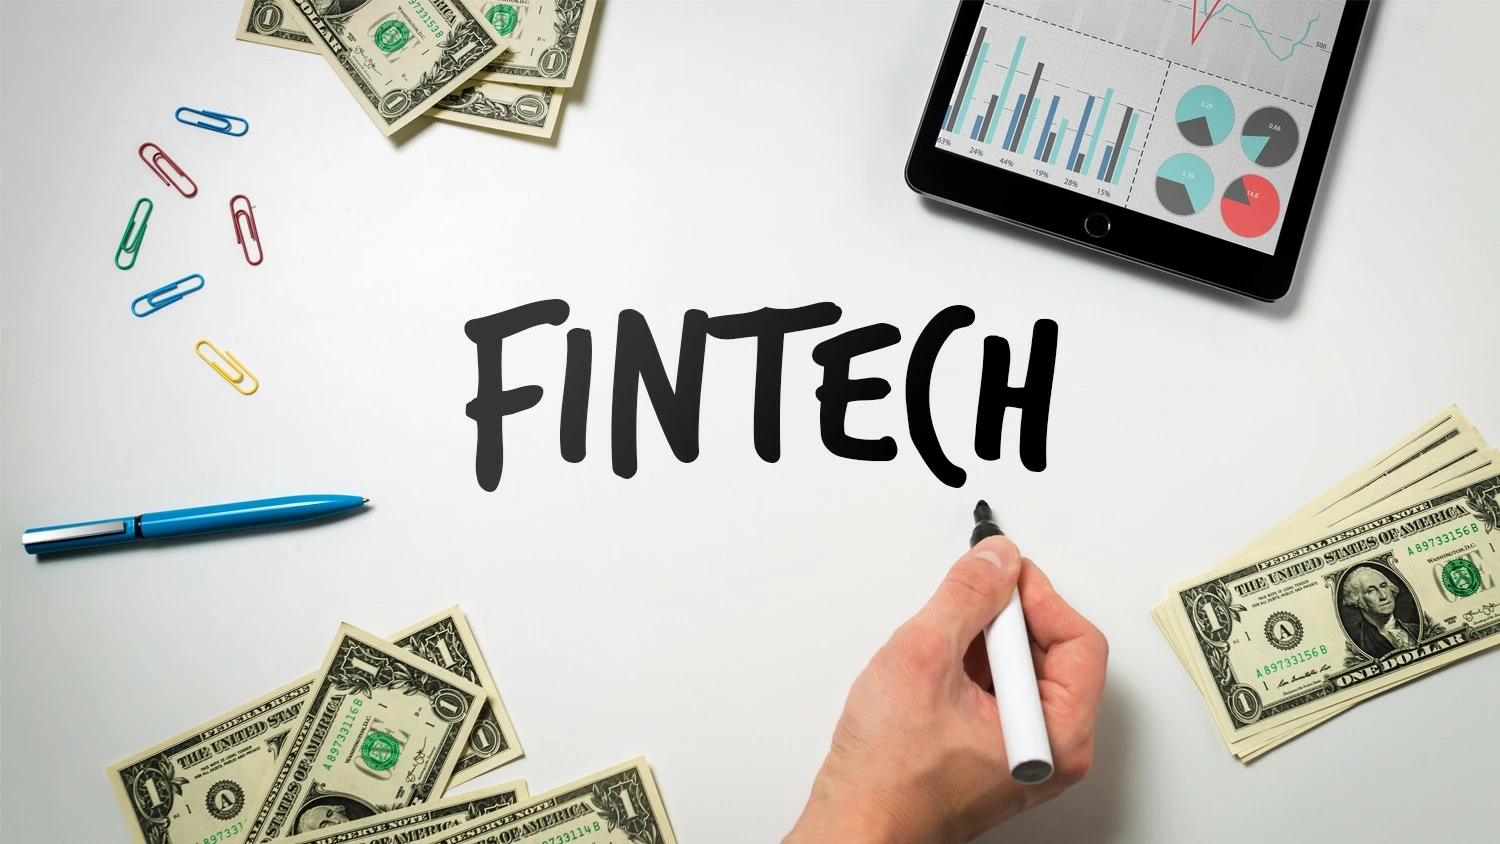 Fintech, Technology and Finance